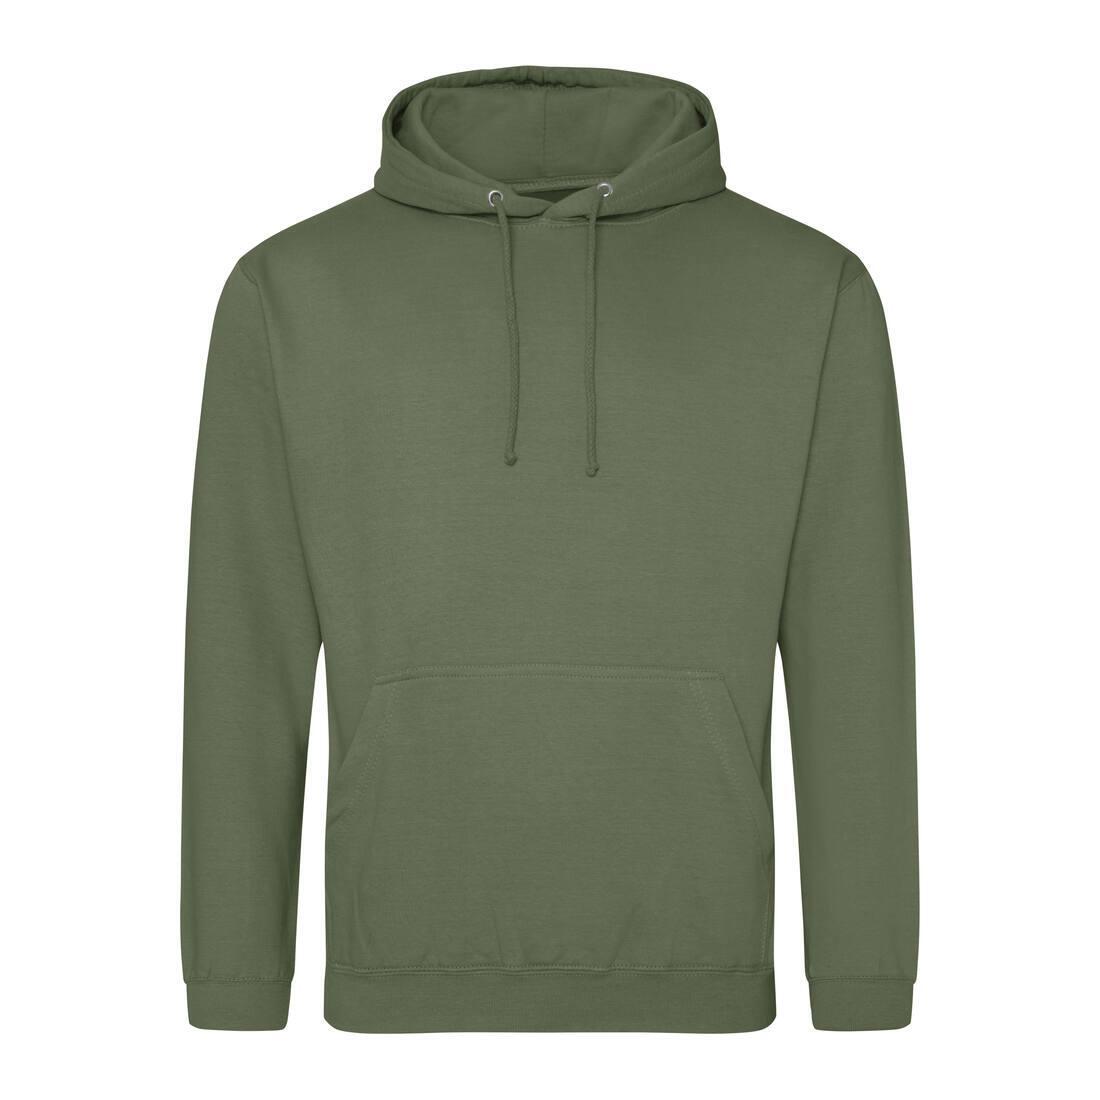 Heren hoodie groen perfect voor bedrukking van logo, tekst, foto